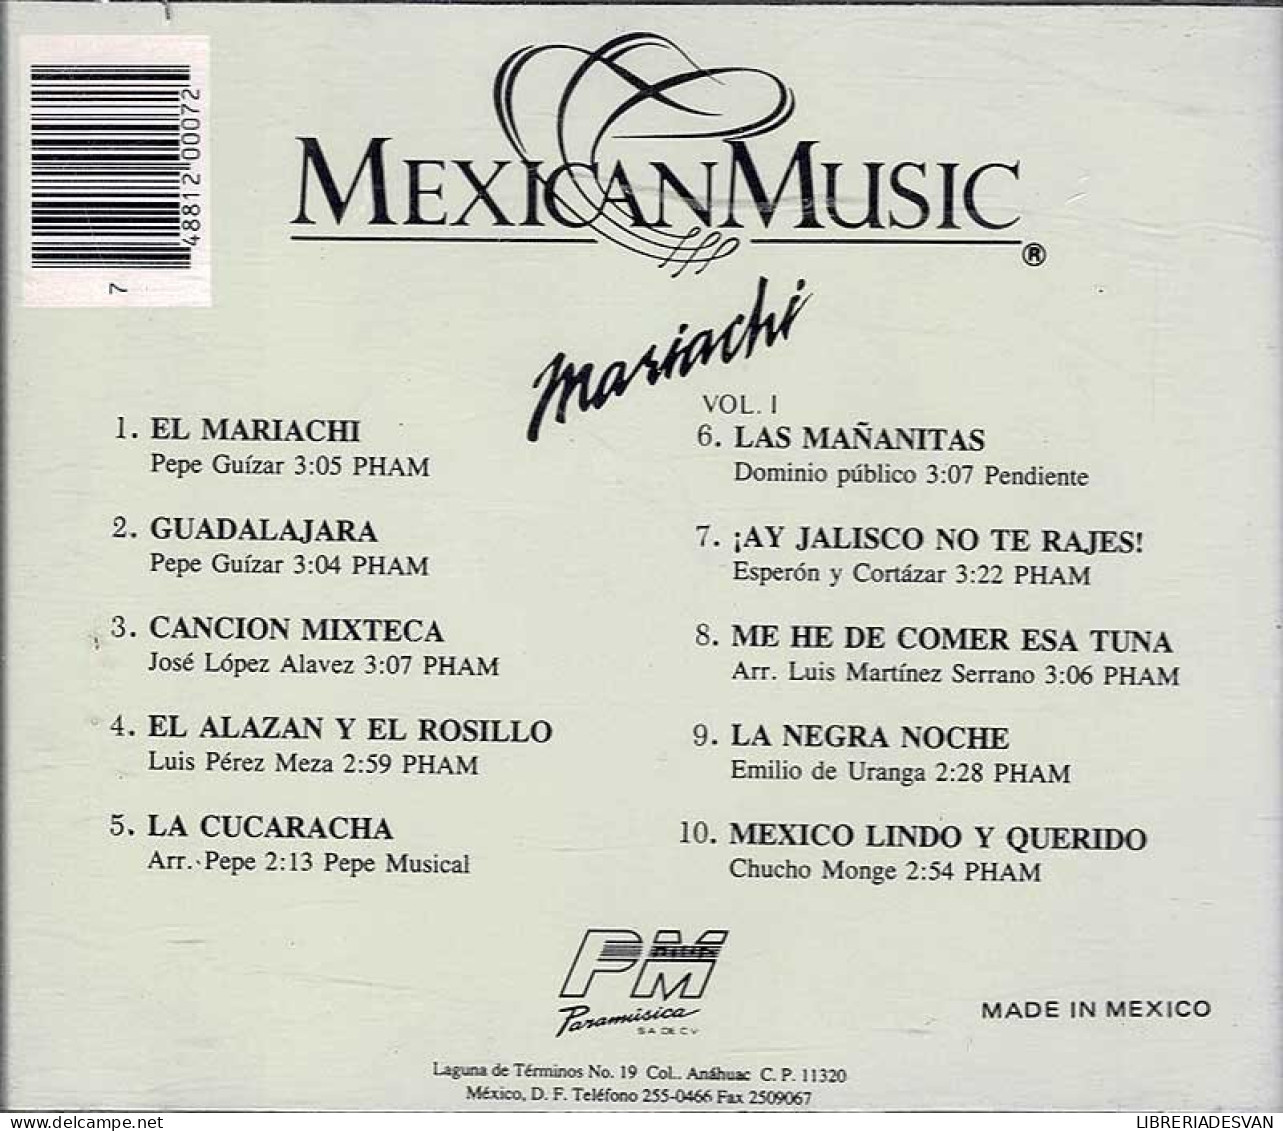 Mexican Music - Mariachi Vol. 1. CD - Country Y Folk